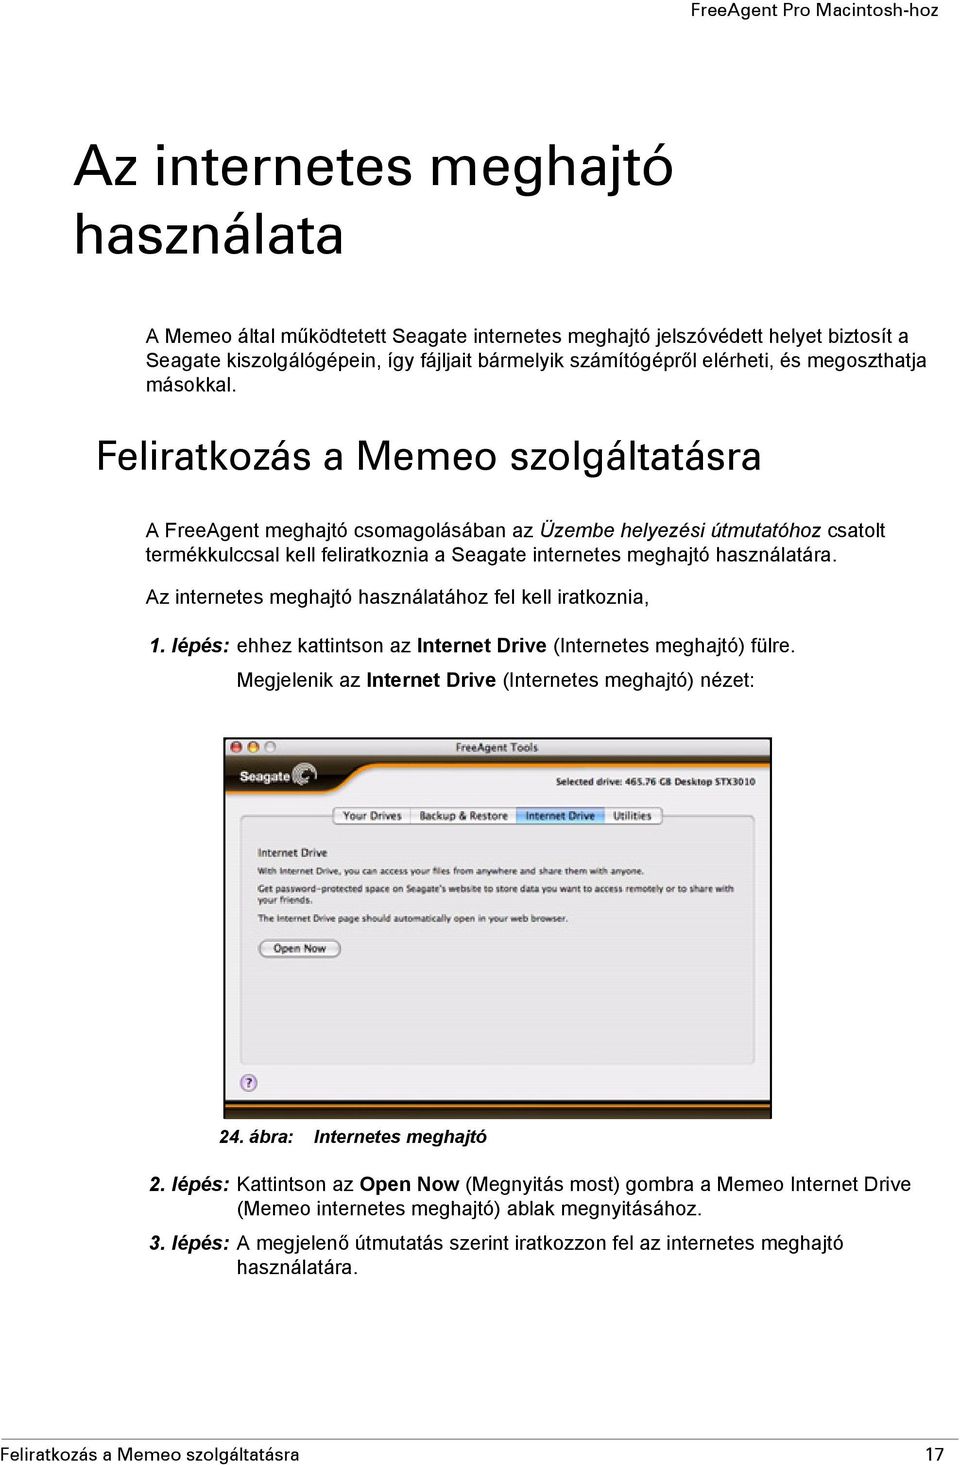 Feliratkozás a Memeo szolgáltatásra A FreeAgent meghajtó csomagolásában az Üzembe helyezési útmutatóhoz csatolt termékkulccsal kell feliratkoznia a Seagate internetes meghajtó használatára.